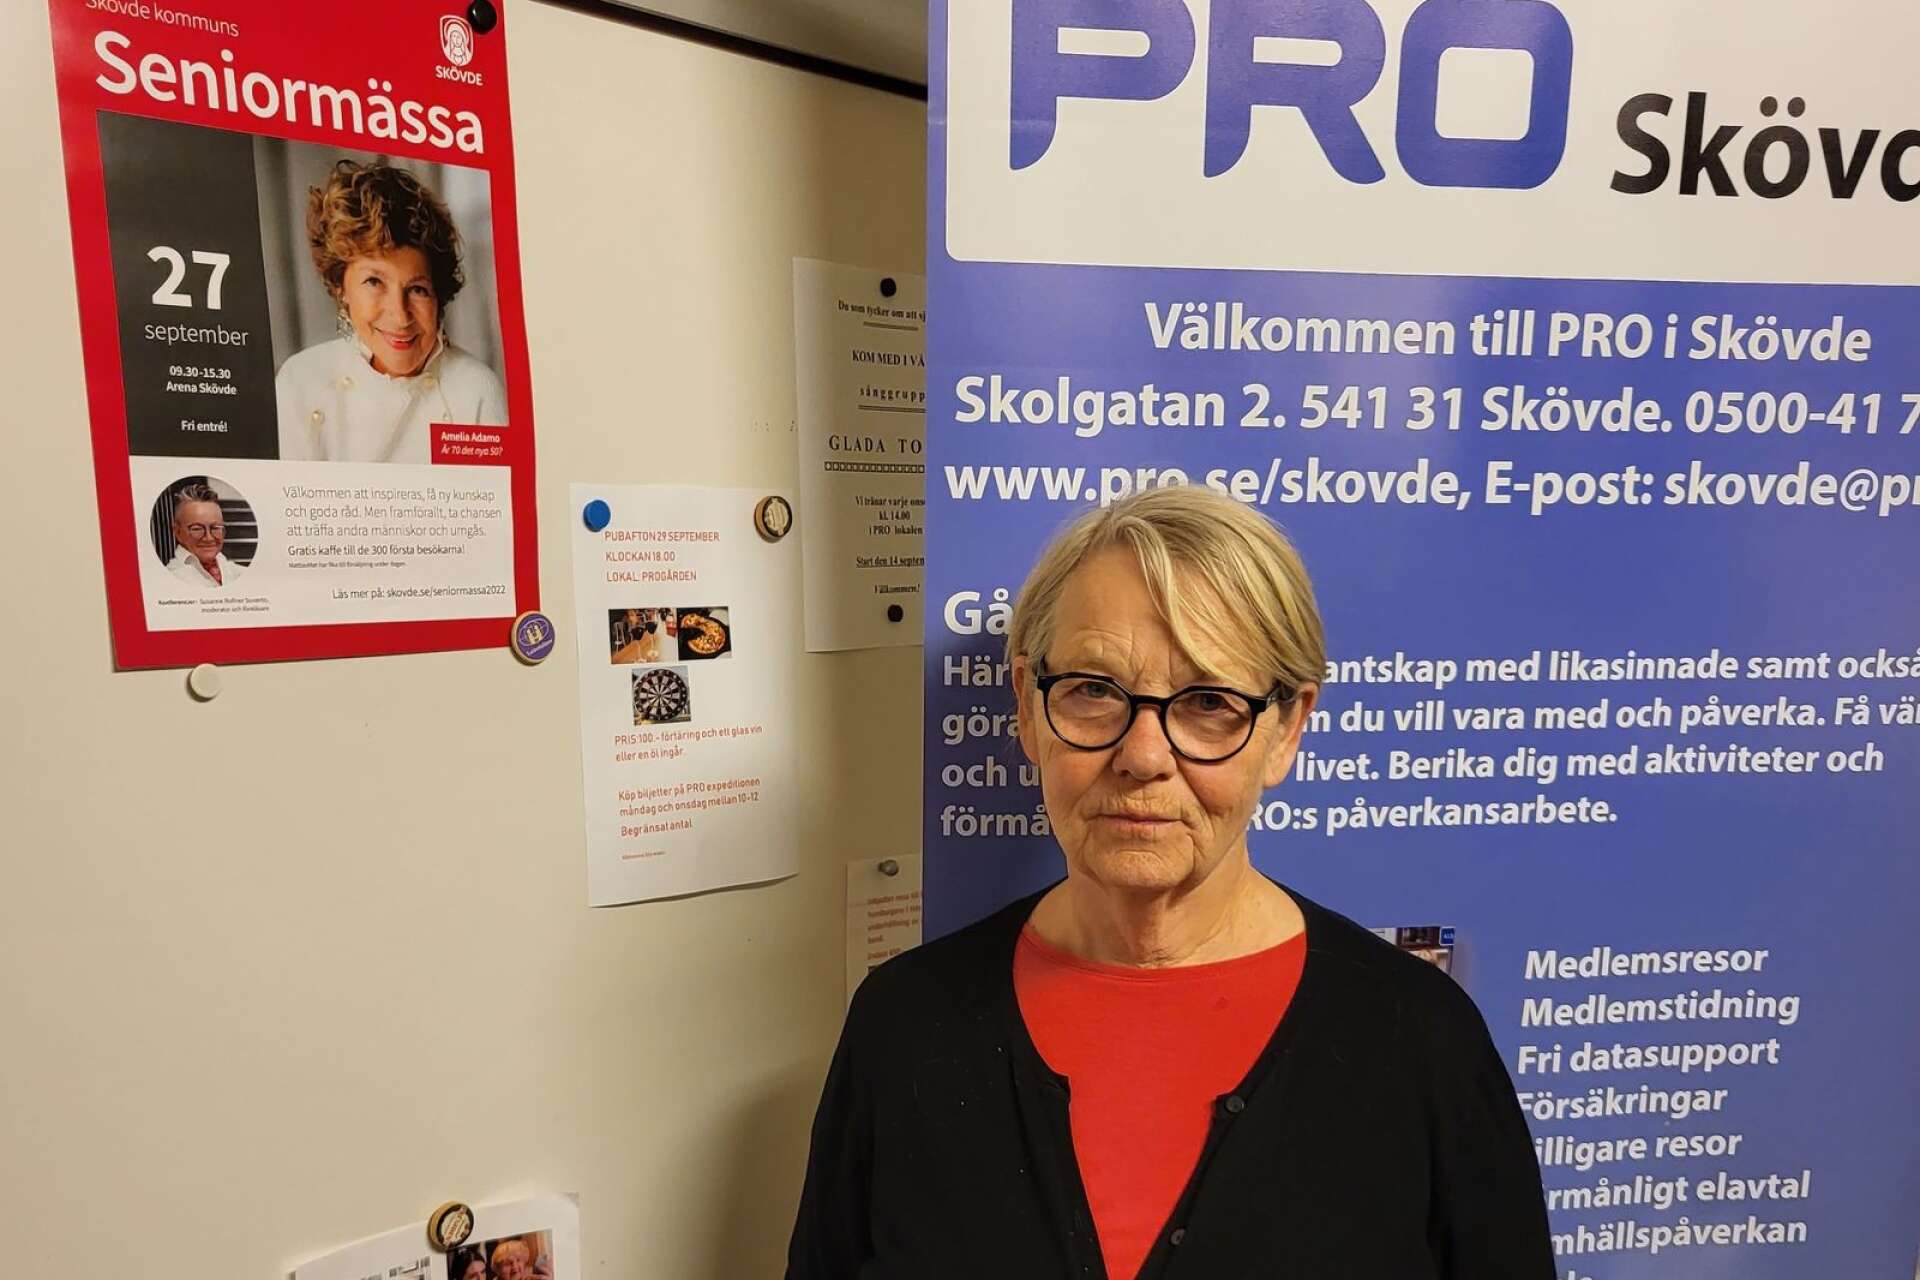 Ing-MarieÅberg från PRO Skövde ser fram emot mässan, att få lyssna på intressanta föreläsningar och träffa andra. Foto: Privat